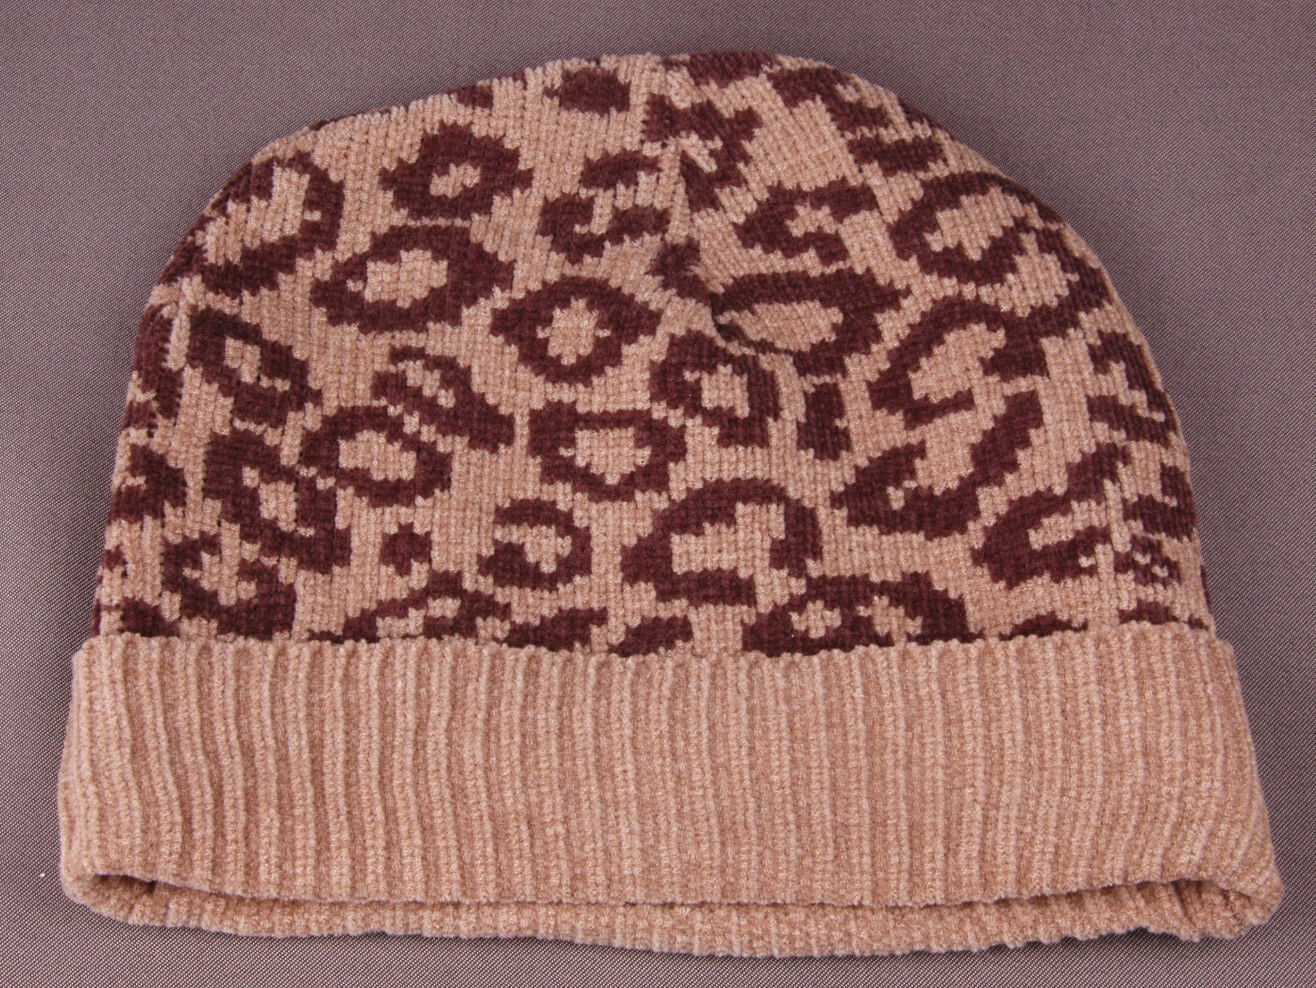 Cheetah Print Winter Hat-Super Soft-Brown-Toque-Beanie-Animal Print-Cuff-Knit